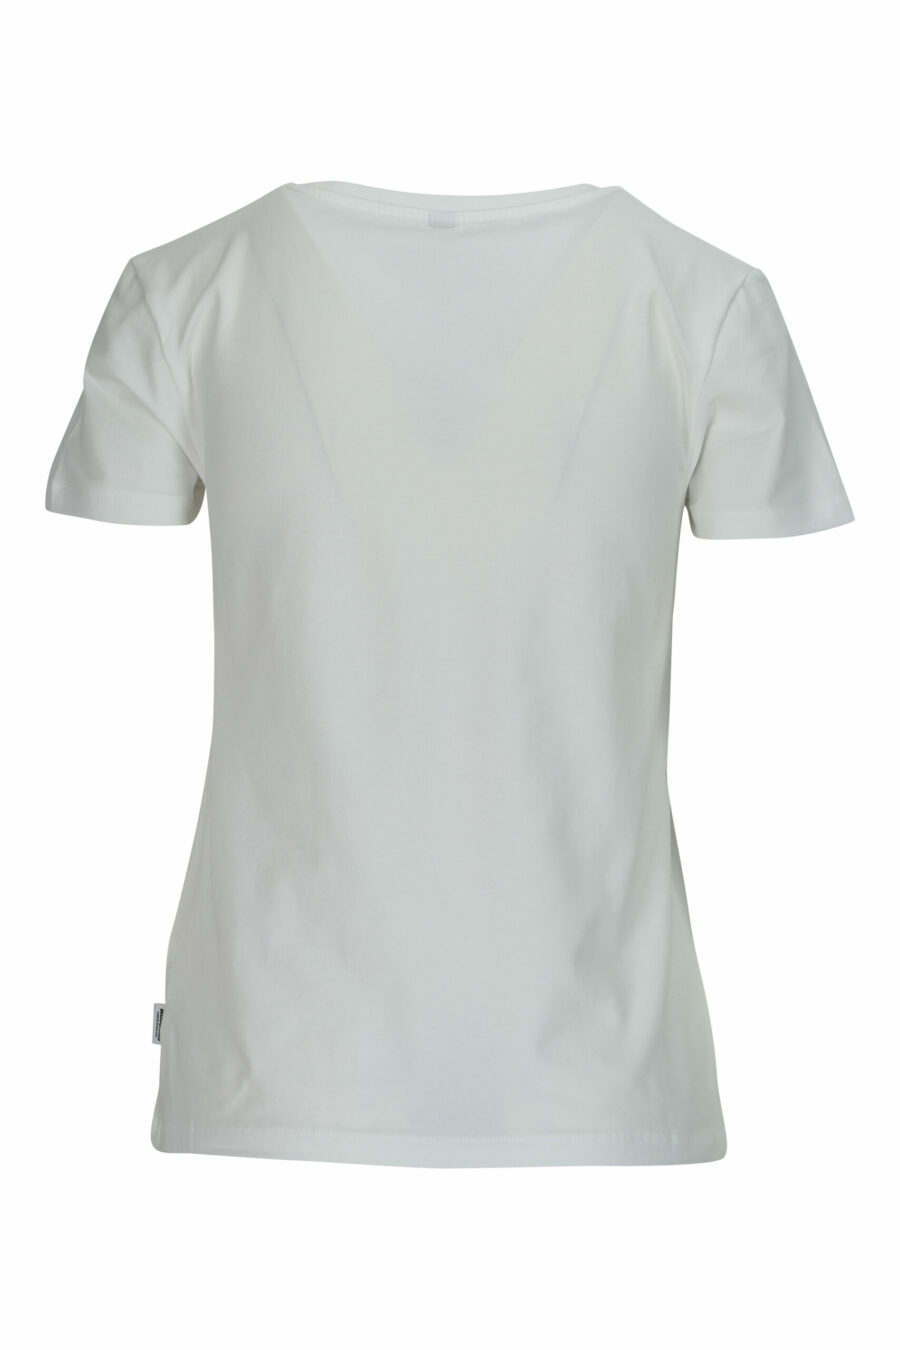 Weißes T-Shirt mit Bärenlogo "underbear" Aufnäher - 667113697321 1 skaliert